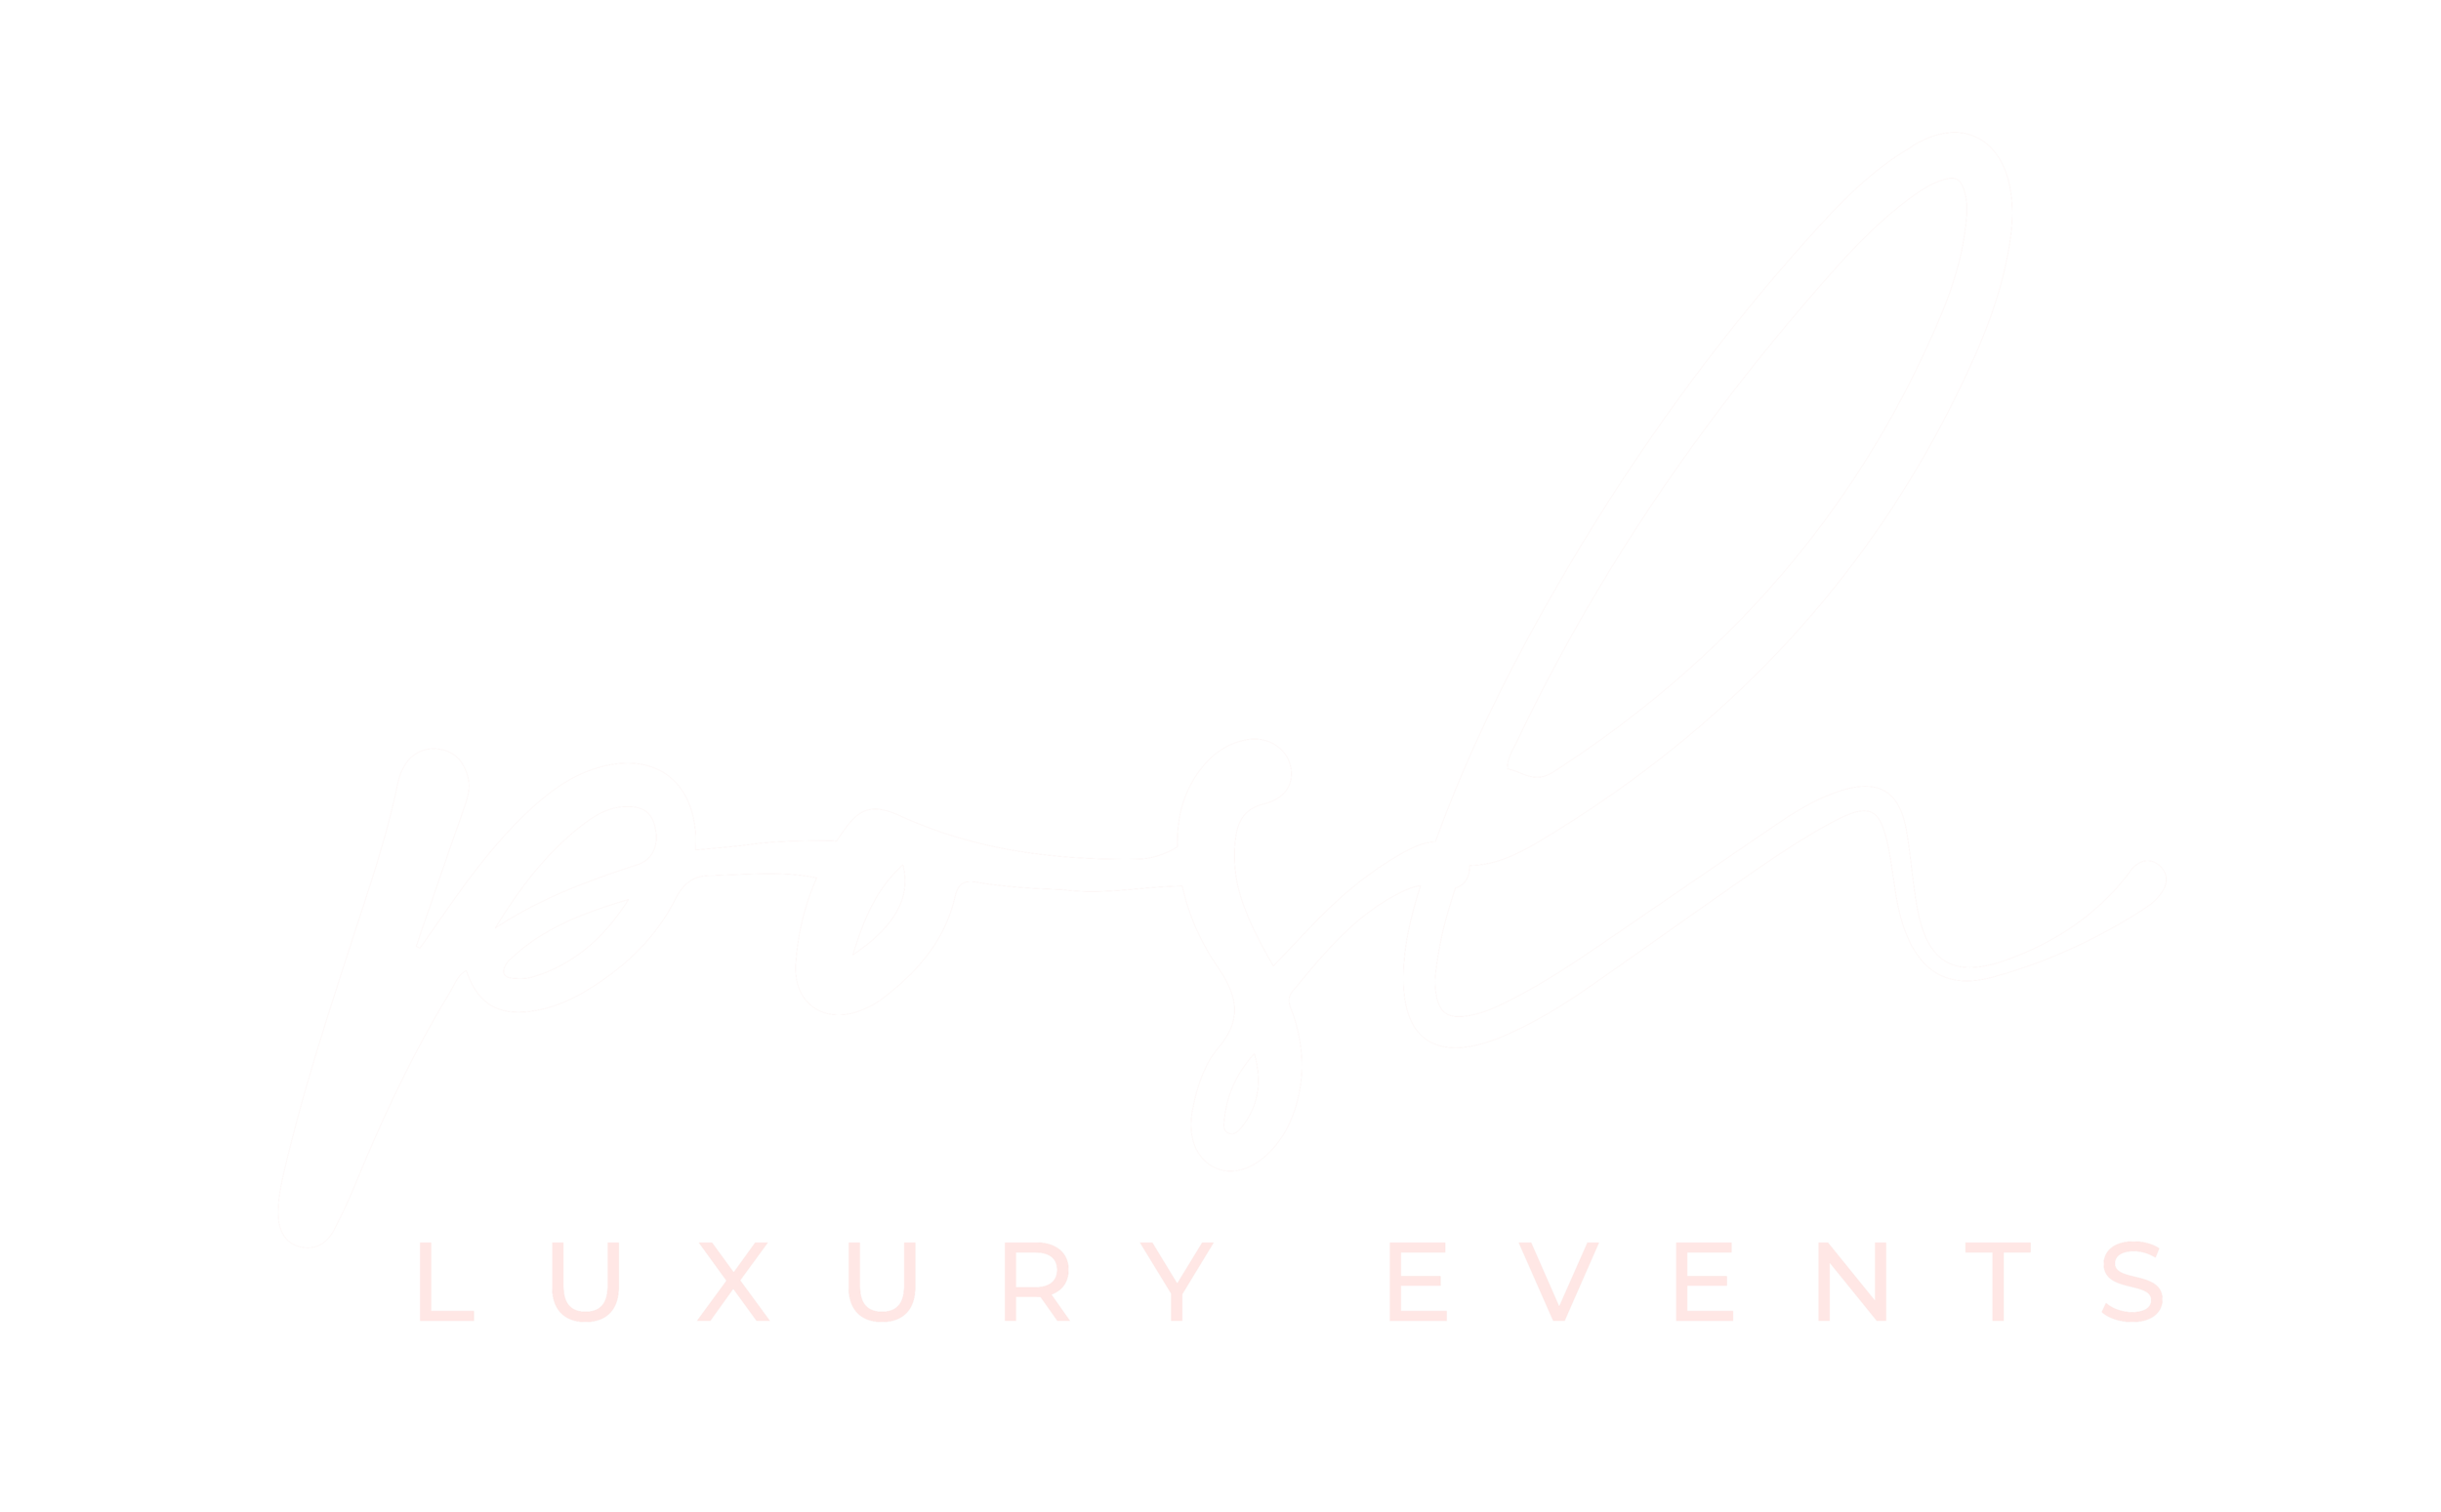 Posh Luxury Events